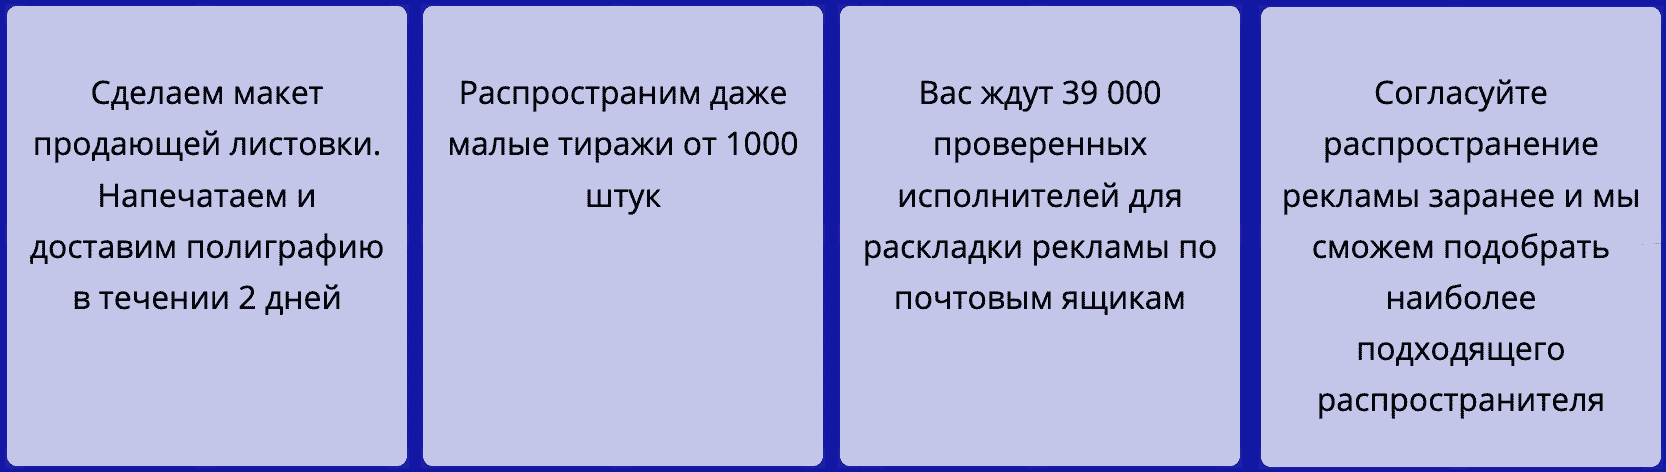 Распространение листовок по почтовым ящикам в Москве описание услуг